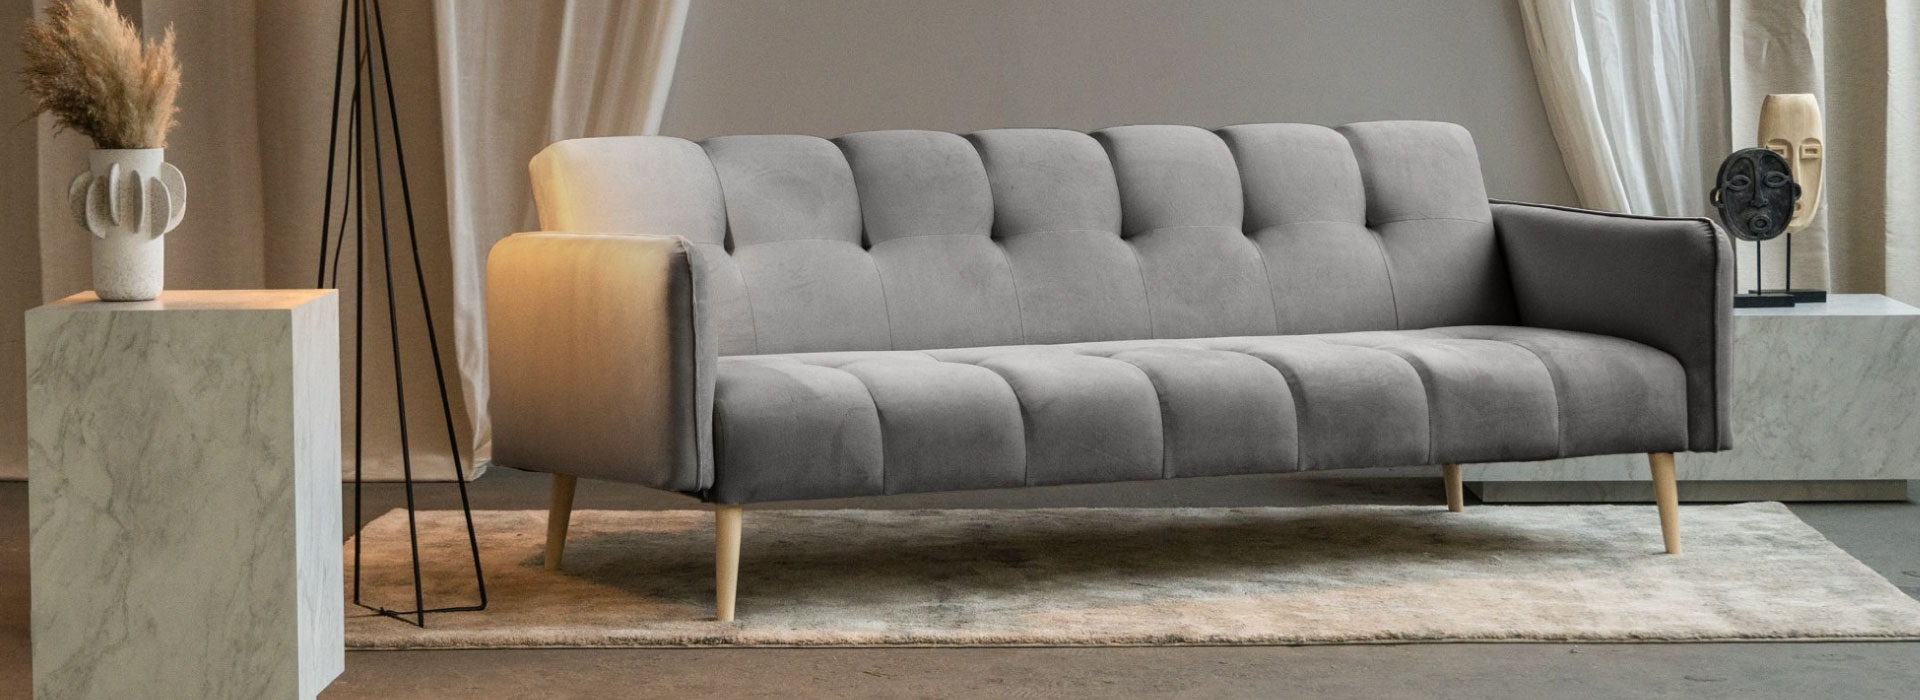 Szara sofa rozkładana na drewnianych nóżkach z dekoracyjnym zagłówkiem i siedziskiem. Po obu stronach sofy widoczne marmurowe stoliki.